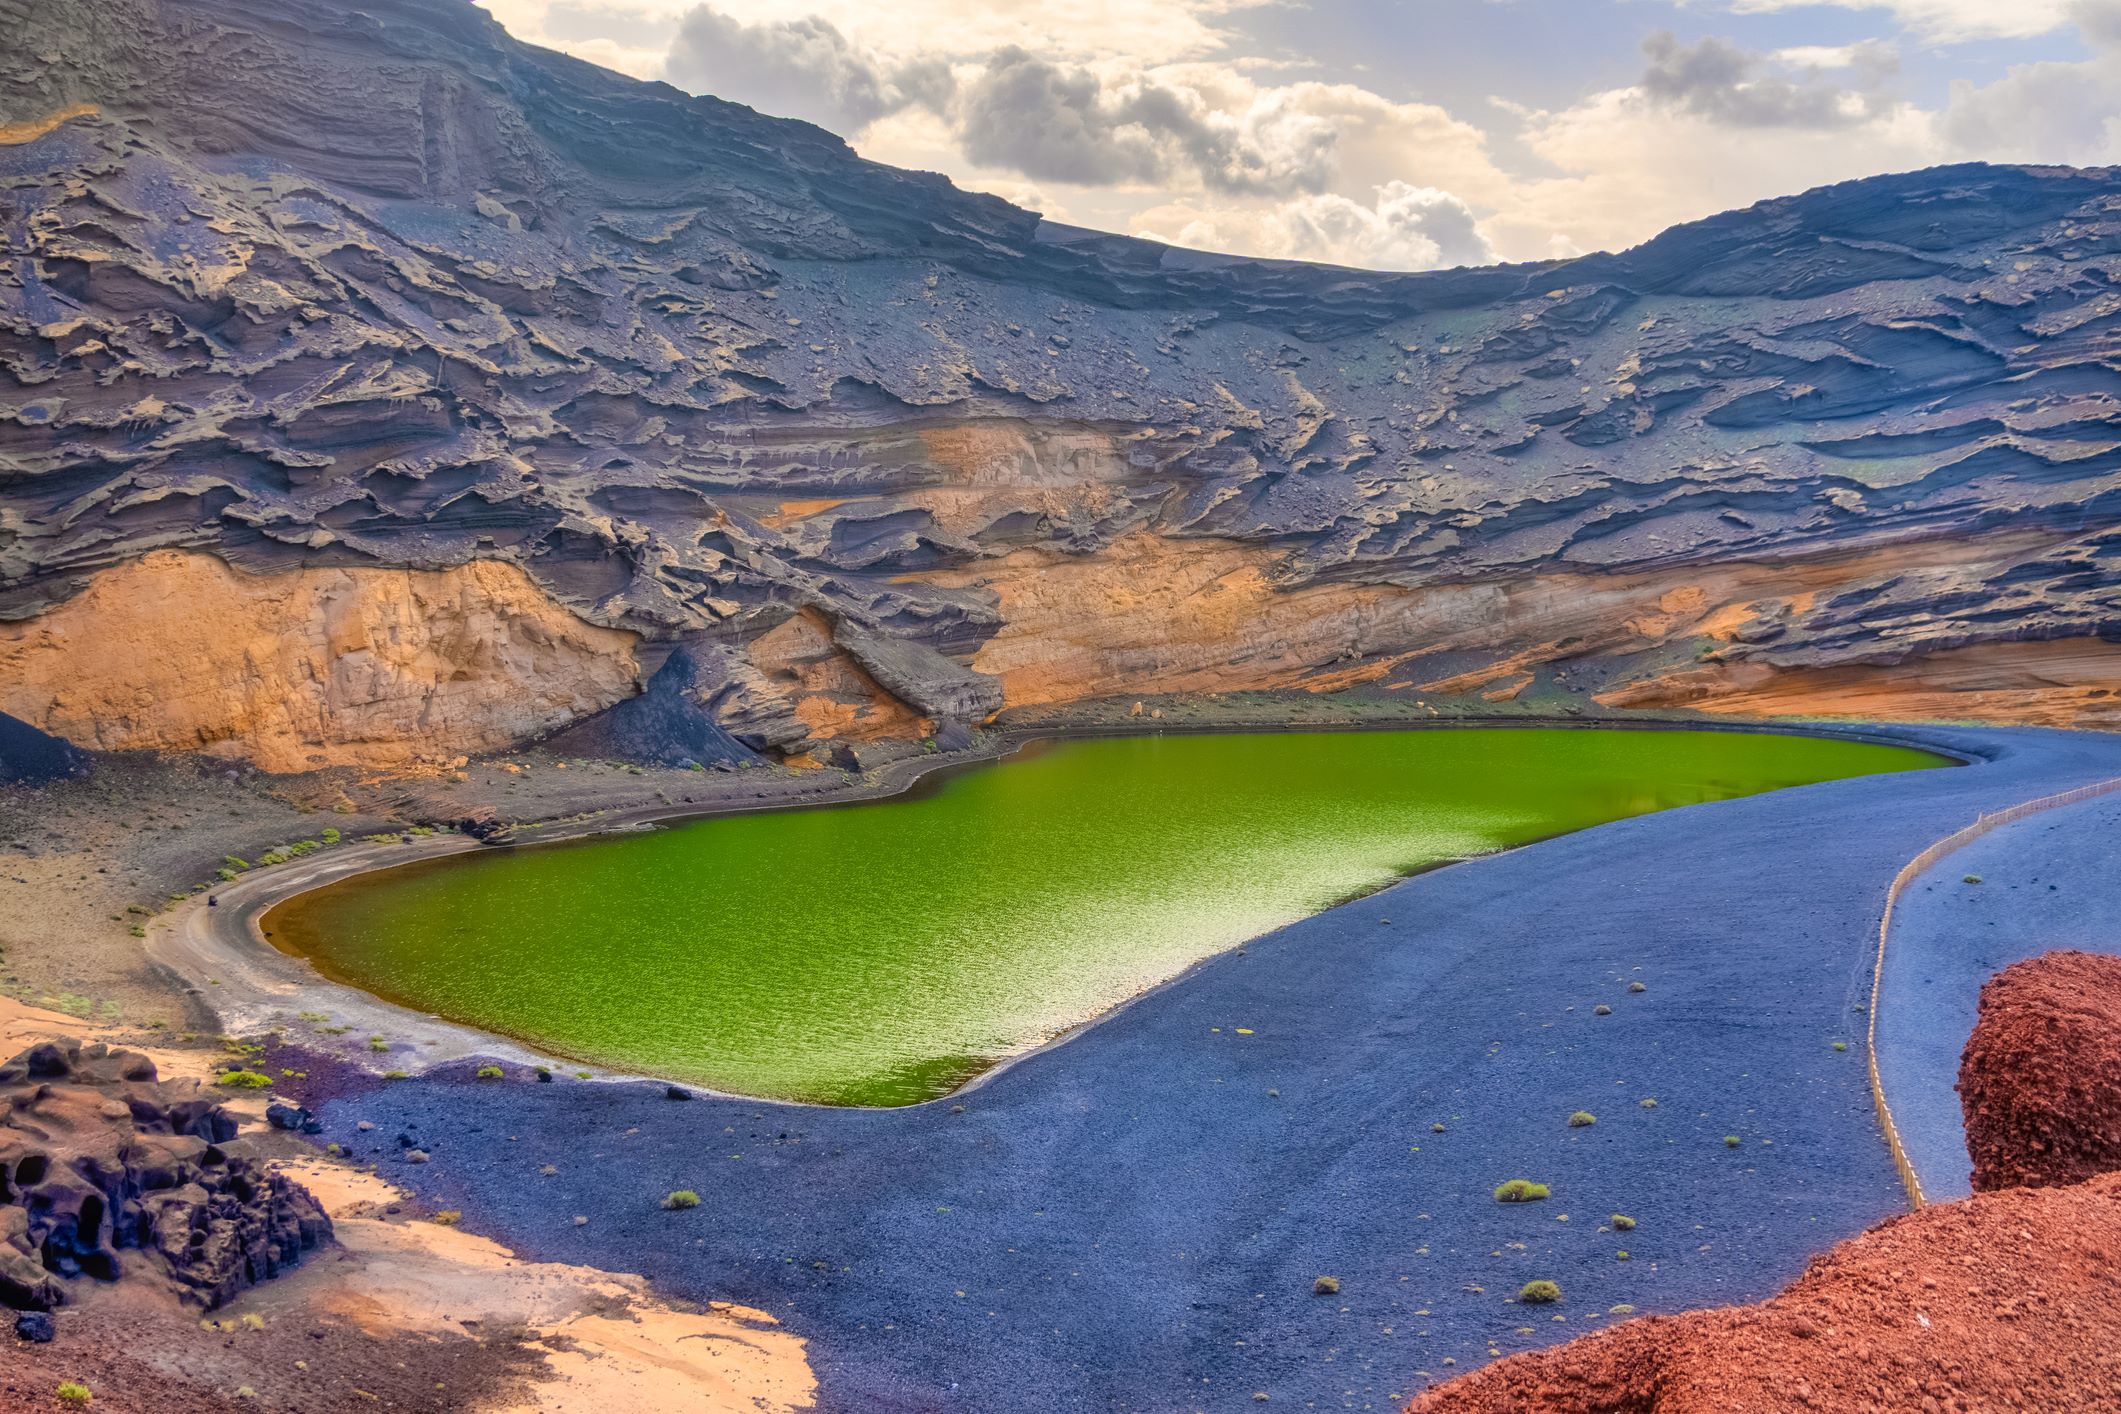 A smaragzöld tó, a Charco de los Clicos a Kanári-szigetek egyik leglátványosabb természeti képződménye